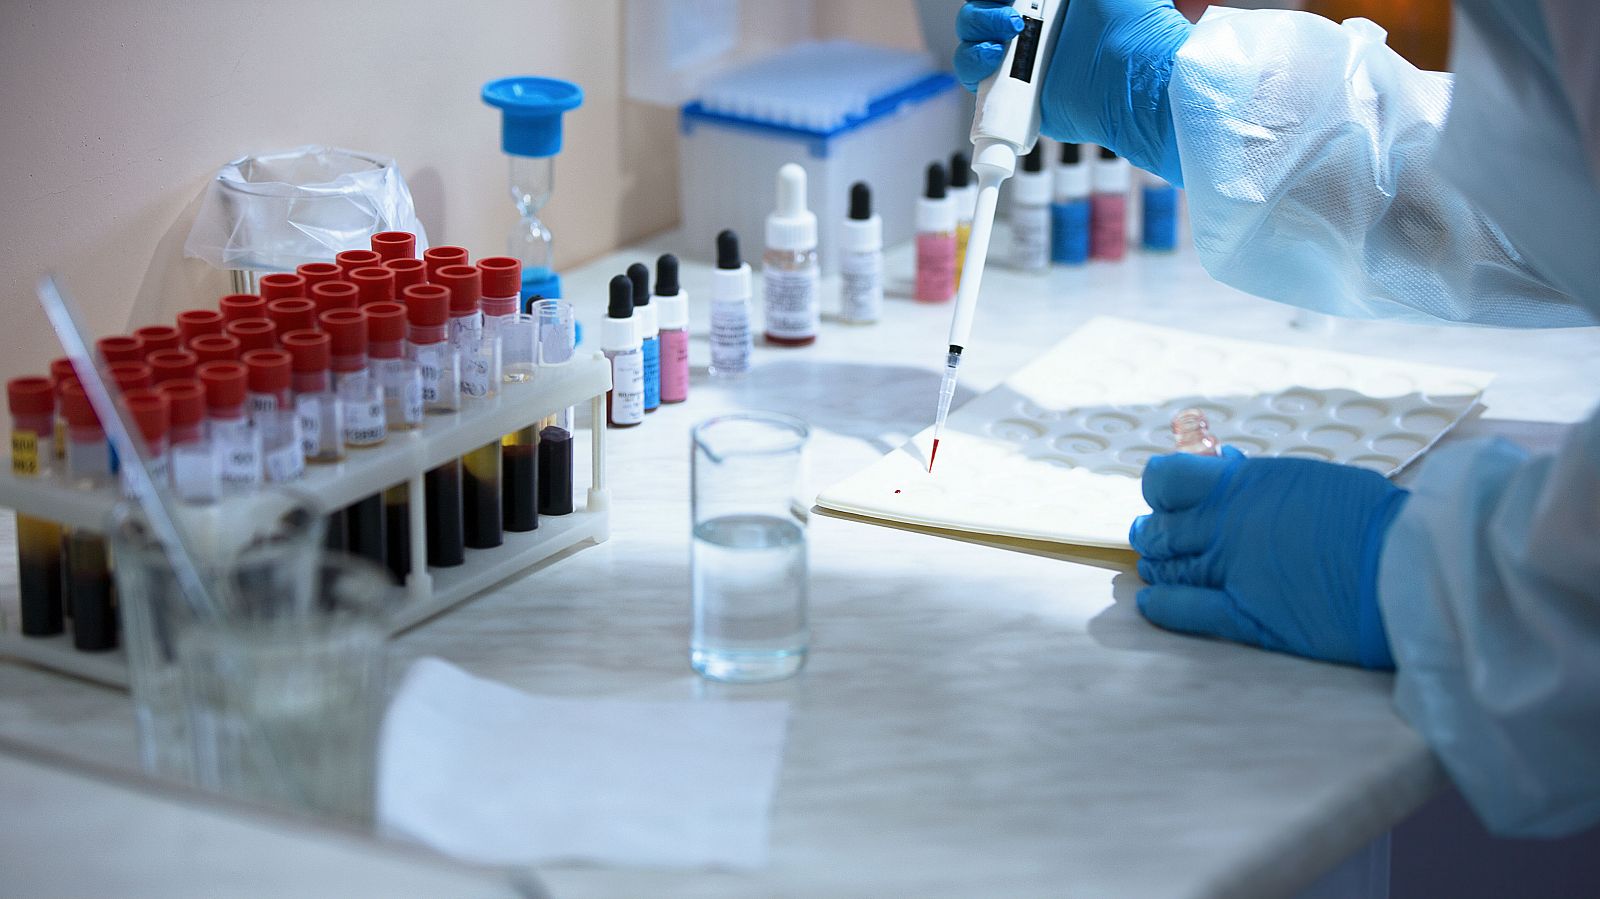 Las personas con grupo sanguíneo A tienen más riesgo de desarrollar patologías graves por coronavirus, según un estudio del Hospital Vall D'Hebrón - RTVE.es